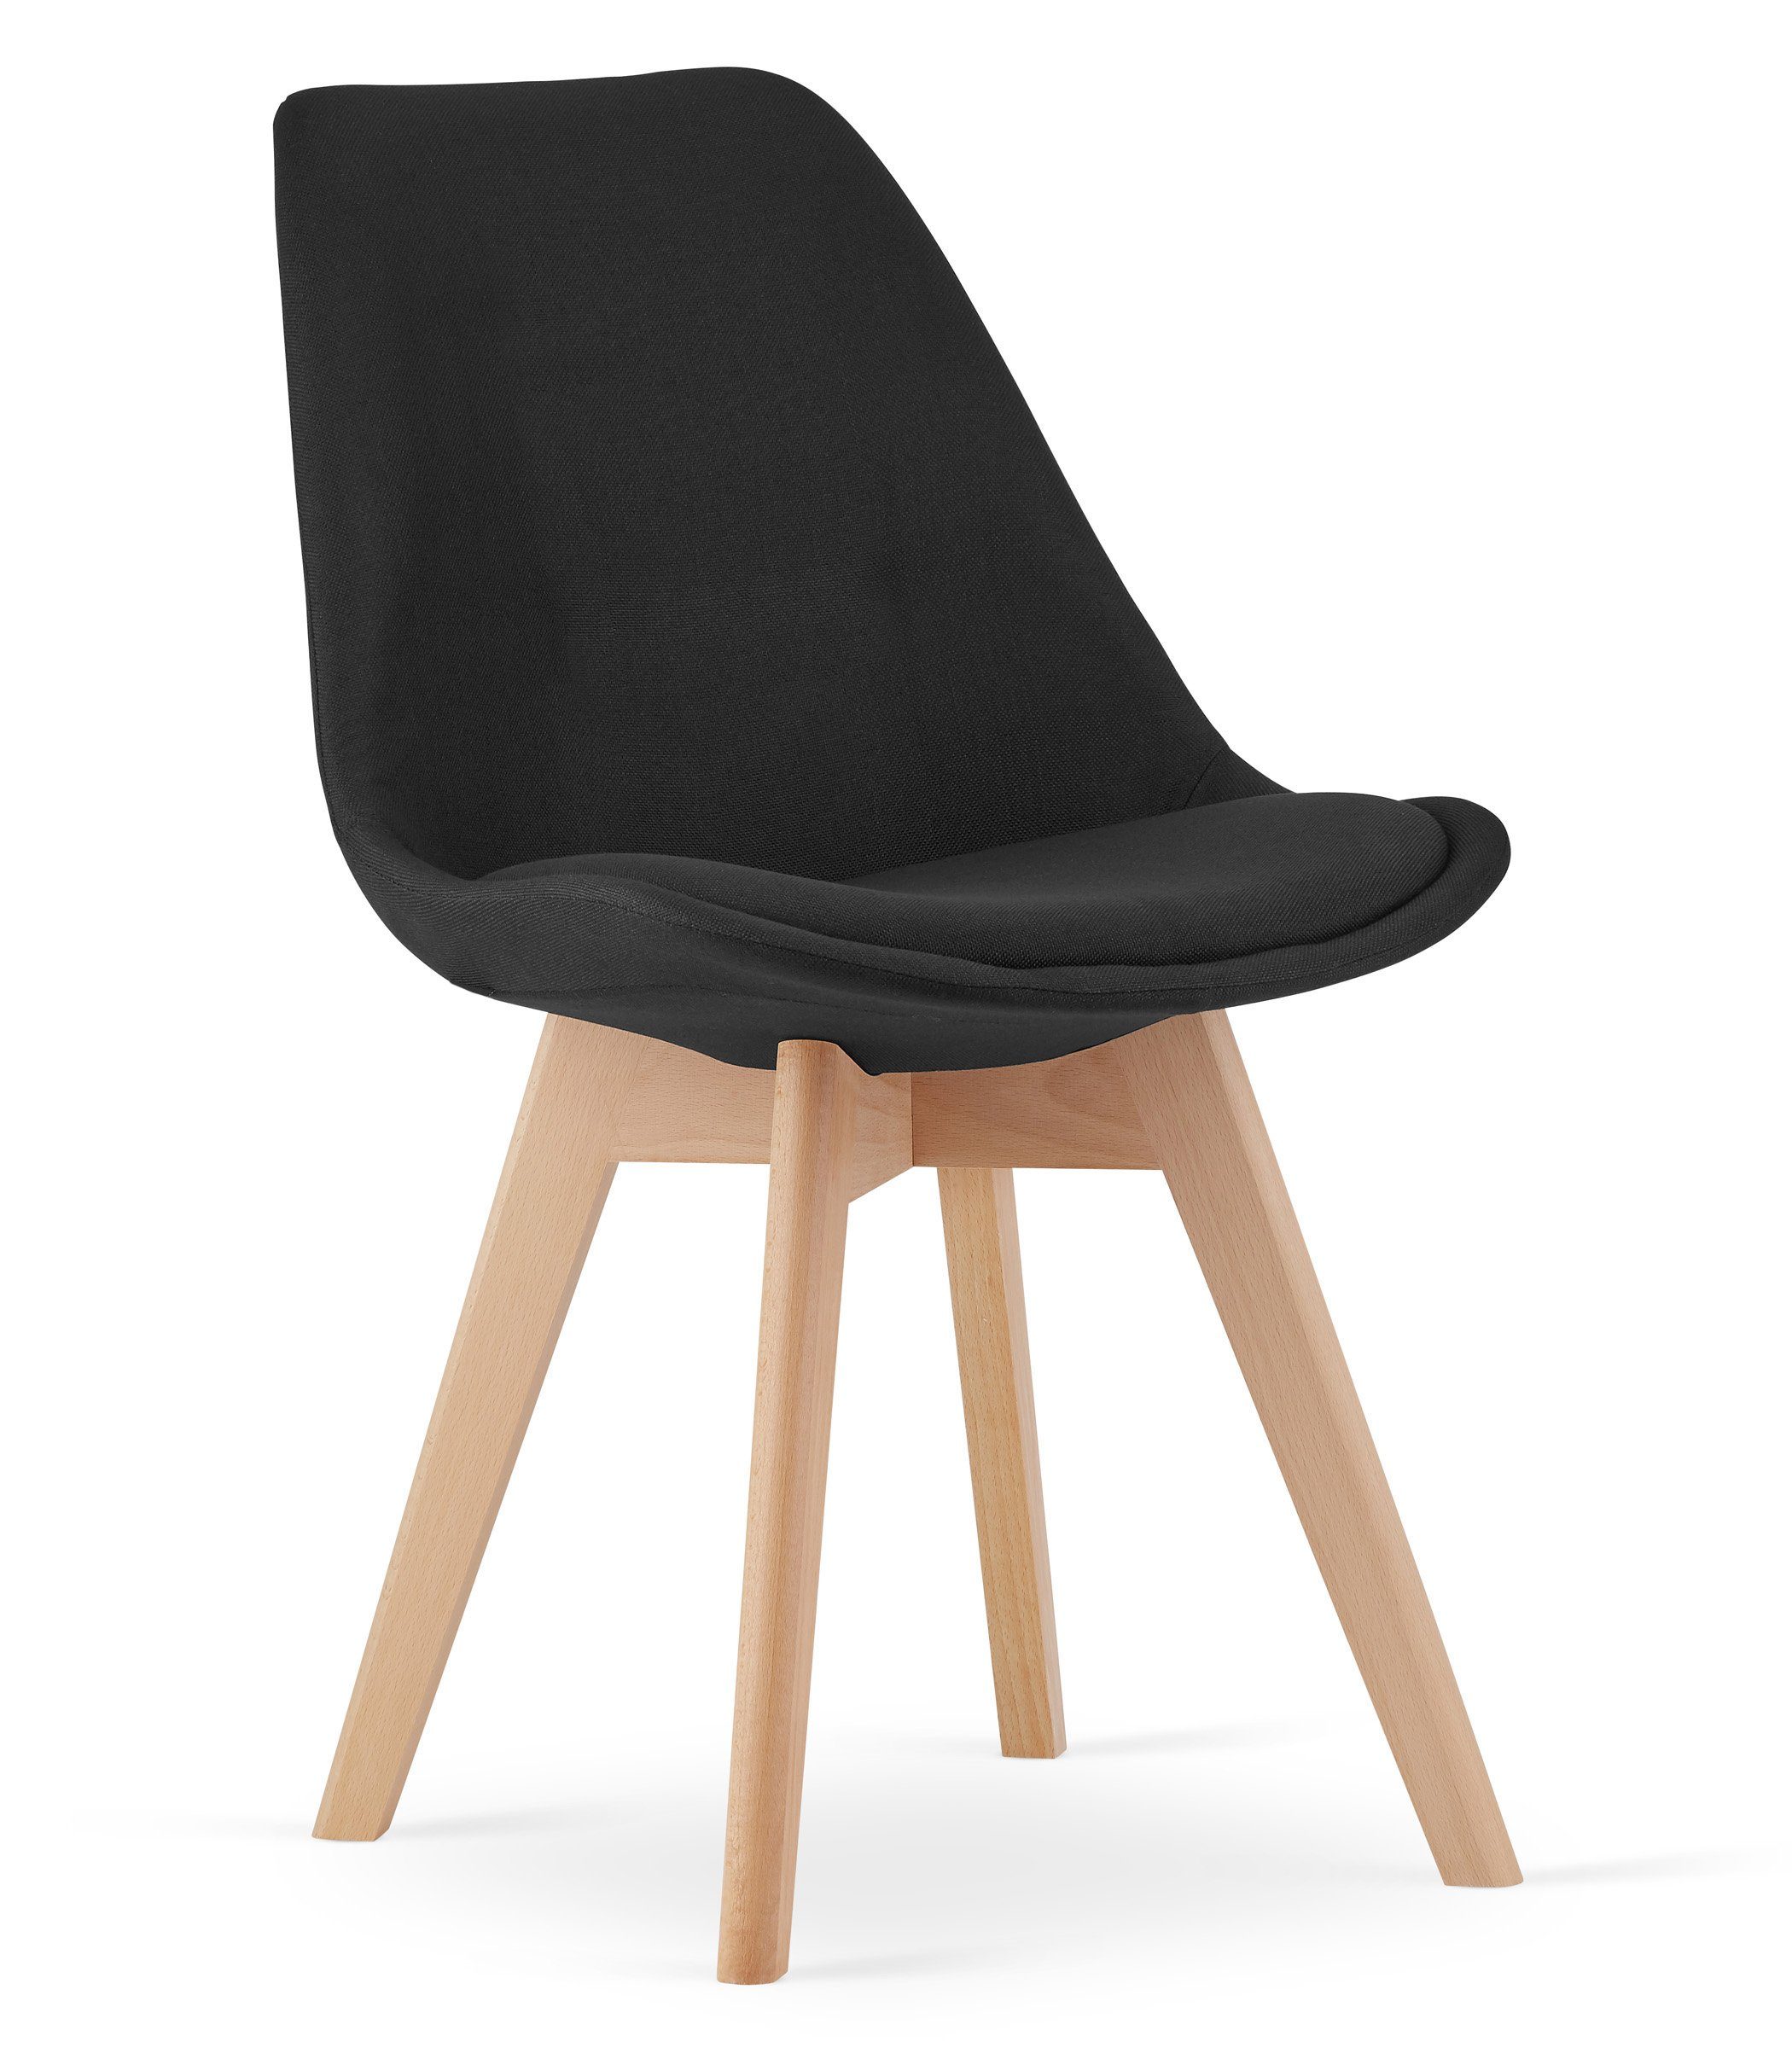 Home Collective Esszimmerstuhl 4er-Set gepolsterter Stuhl, weicher Stoff mit Beinen aus Buchenholz, 120 kg Sitzlast,schwarzer Stoff ohne Knöpfe, natürliche Beine